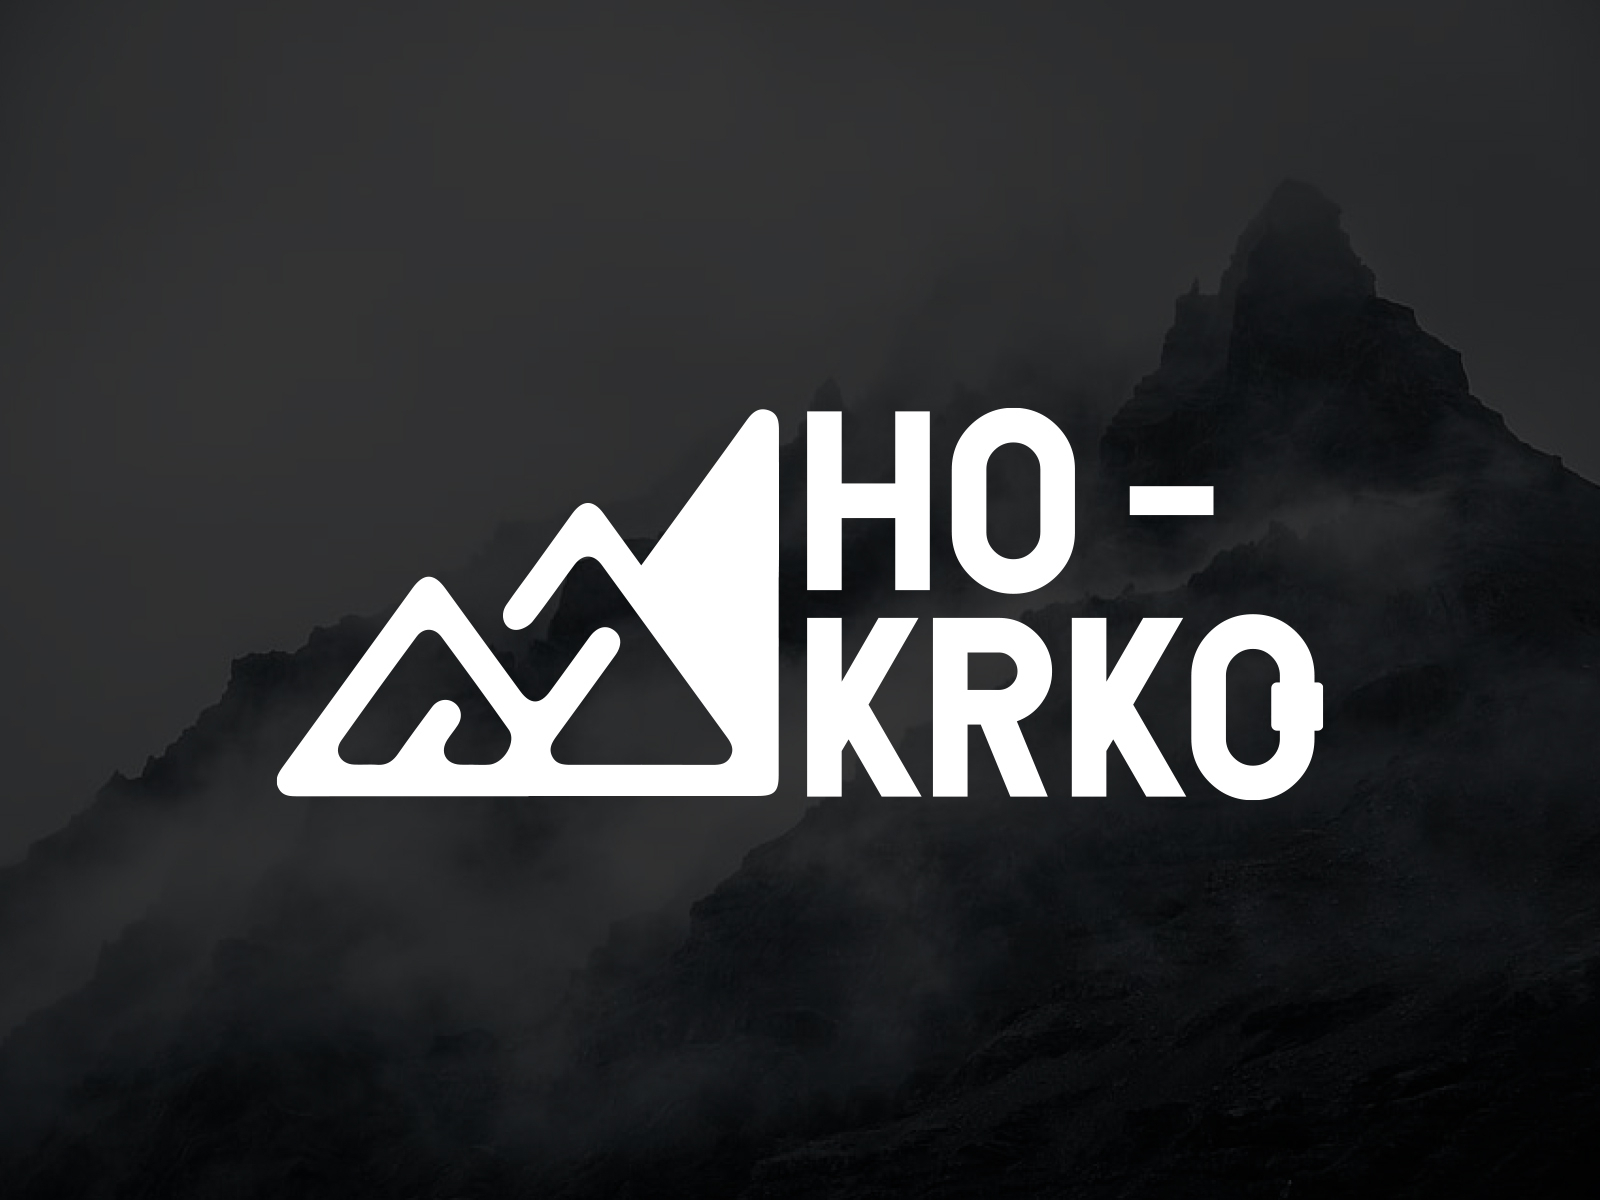 HO-KRKO logo by Štěpán Hrnčíř on Dribbble